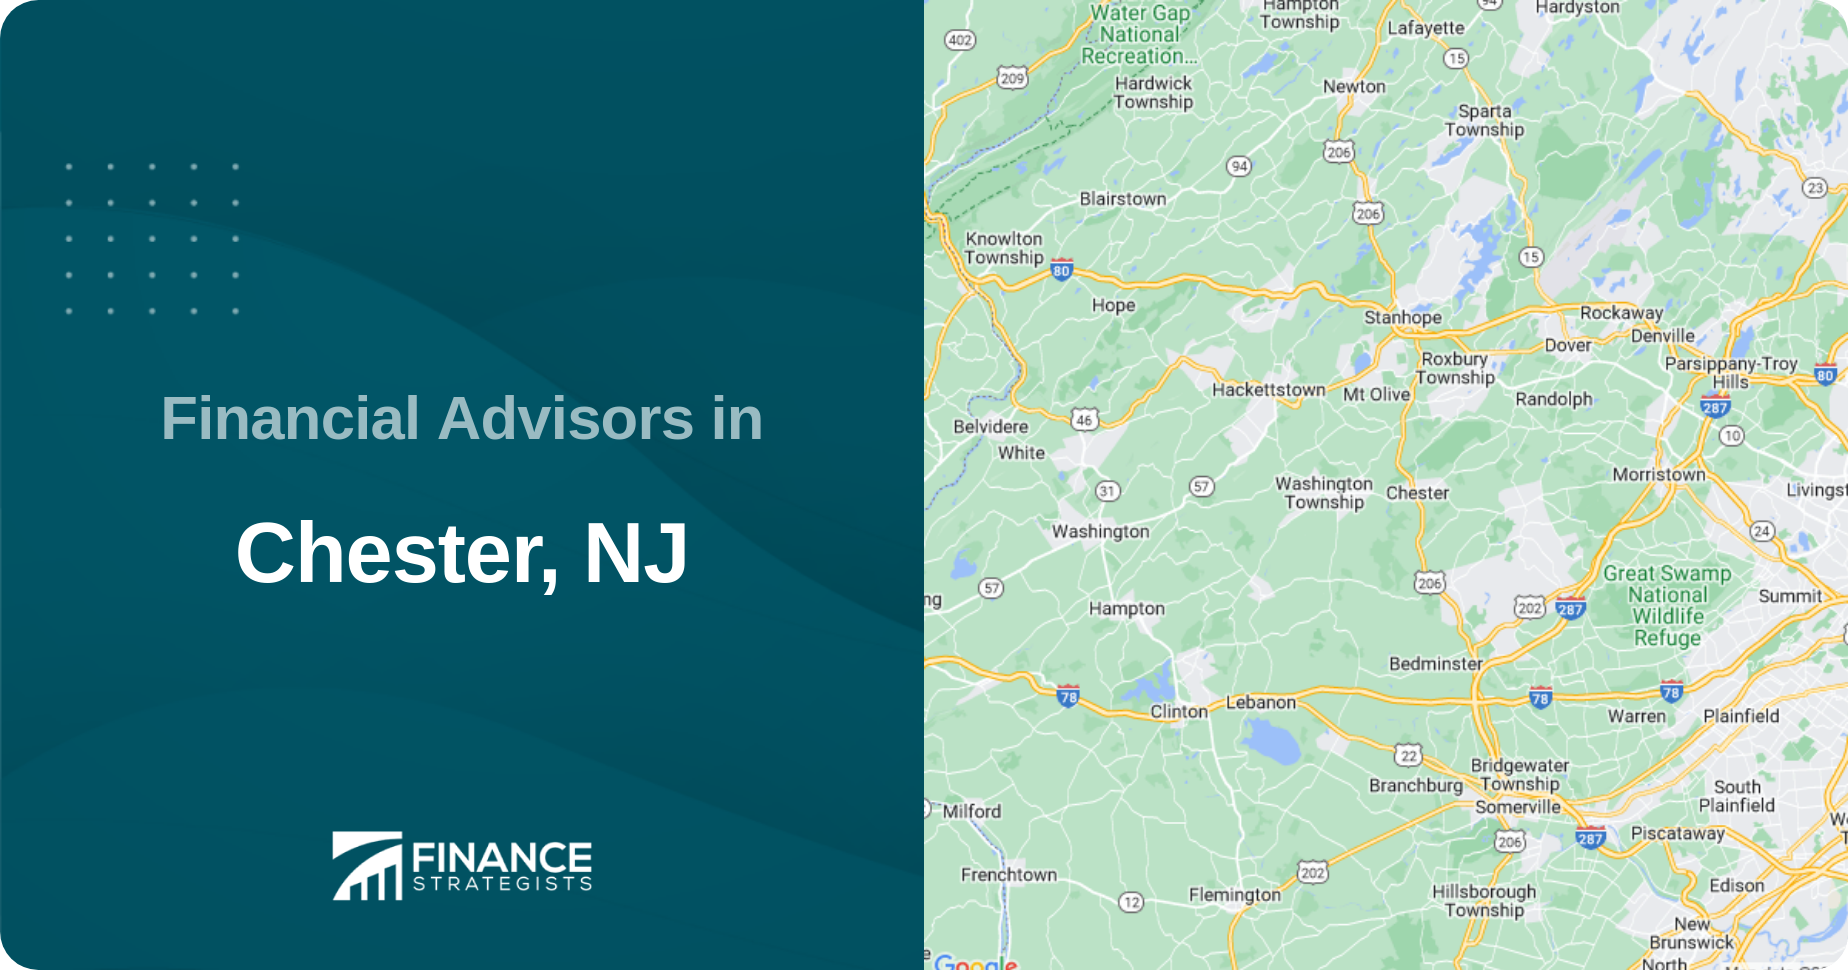 Financial Advisors in Chester, NJ